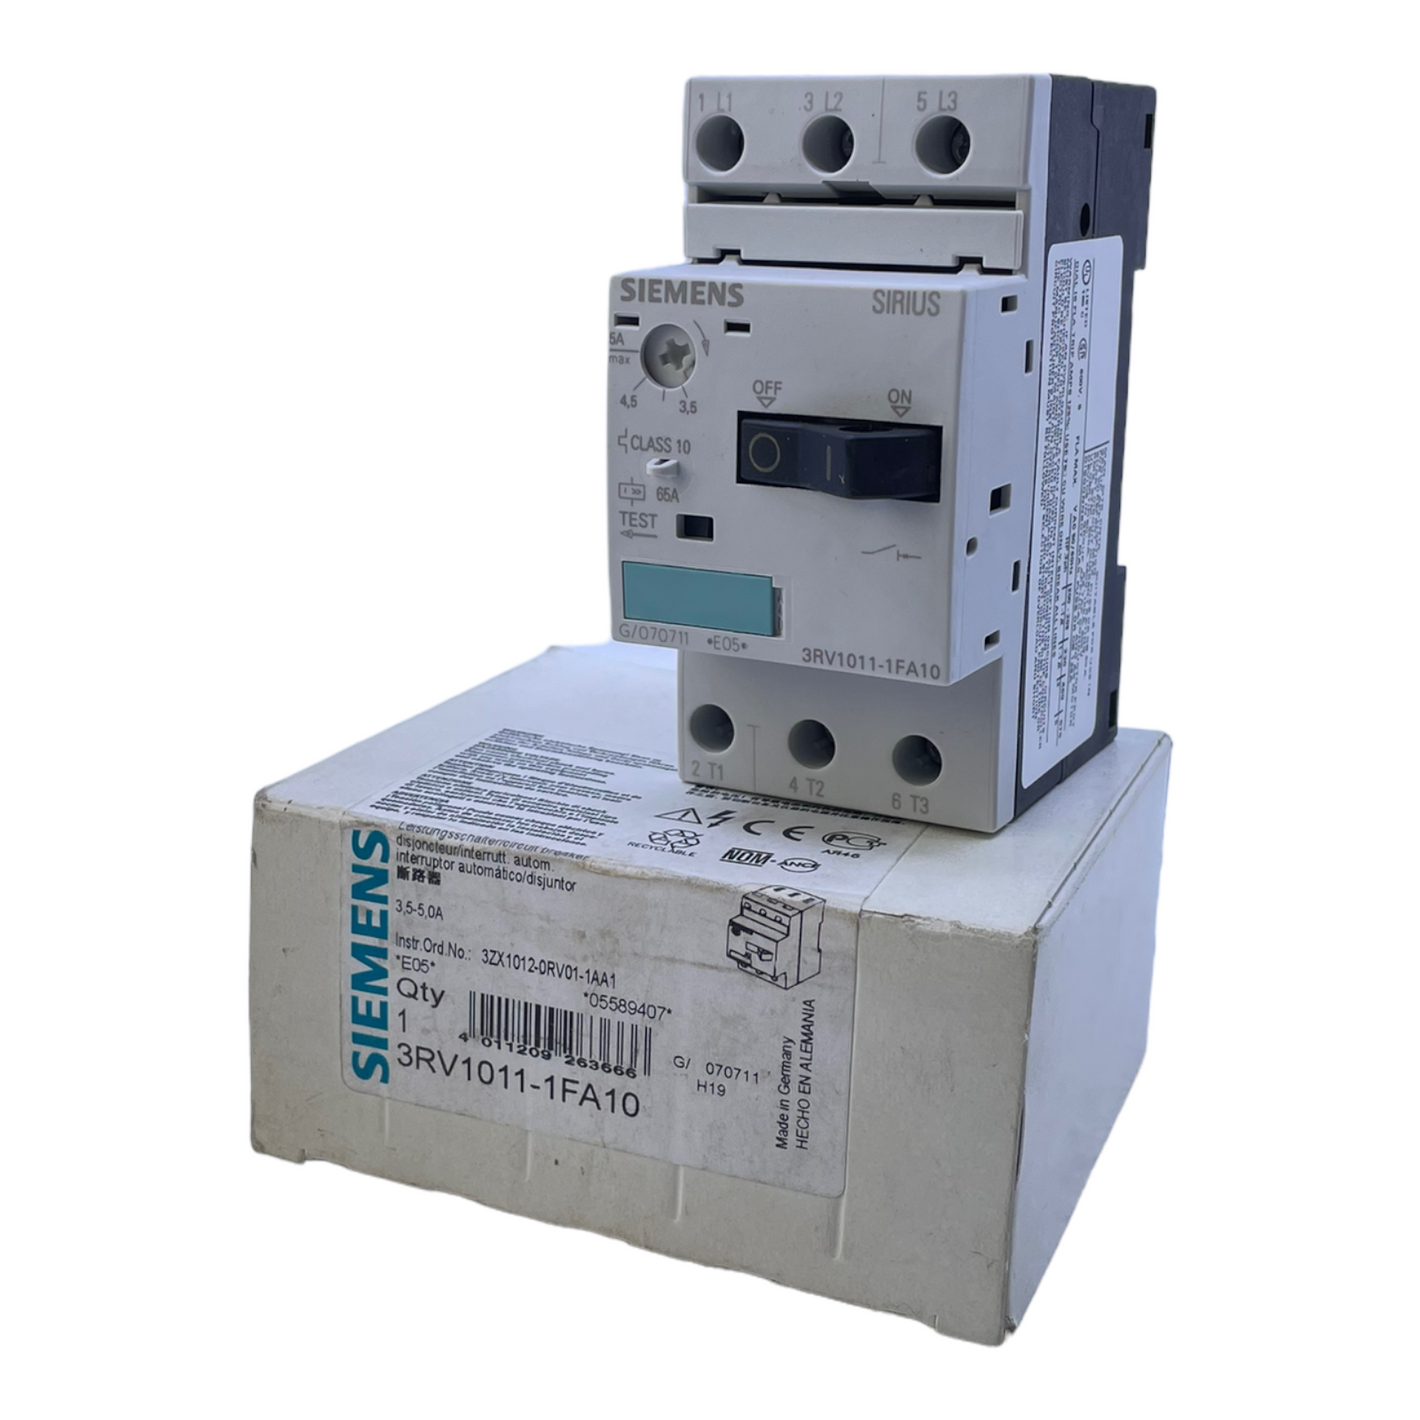 Siemens 3RV1011-1FA10 circuit breaker 5A industrial circuit breaker Siemens